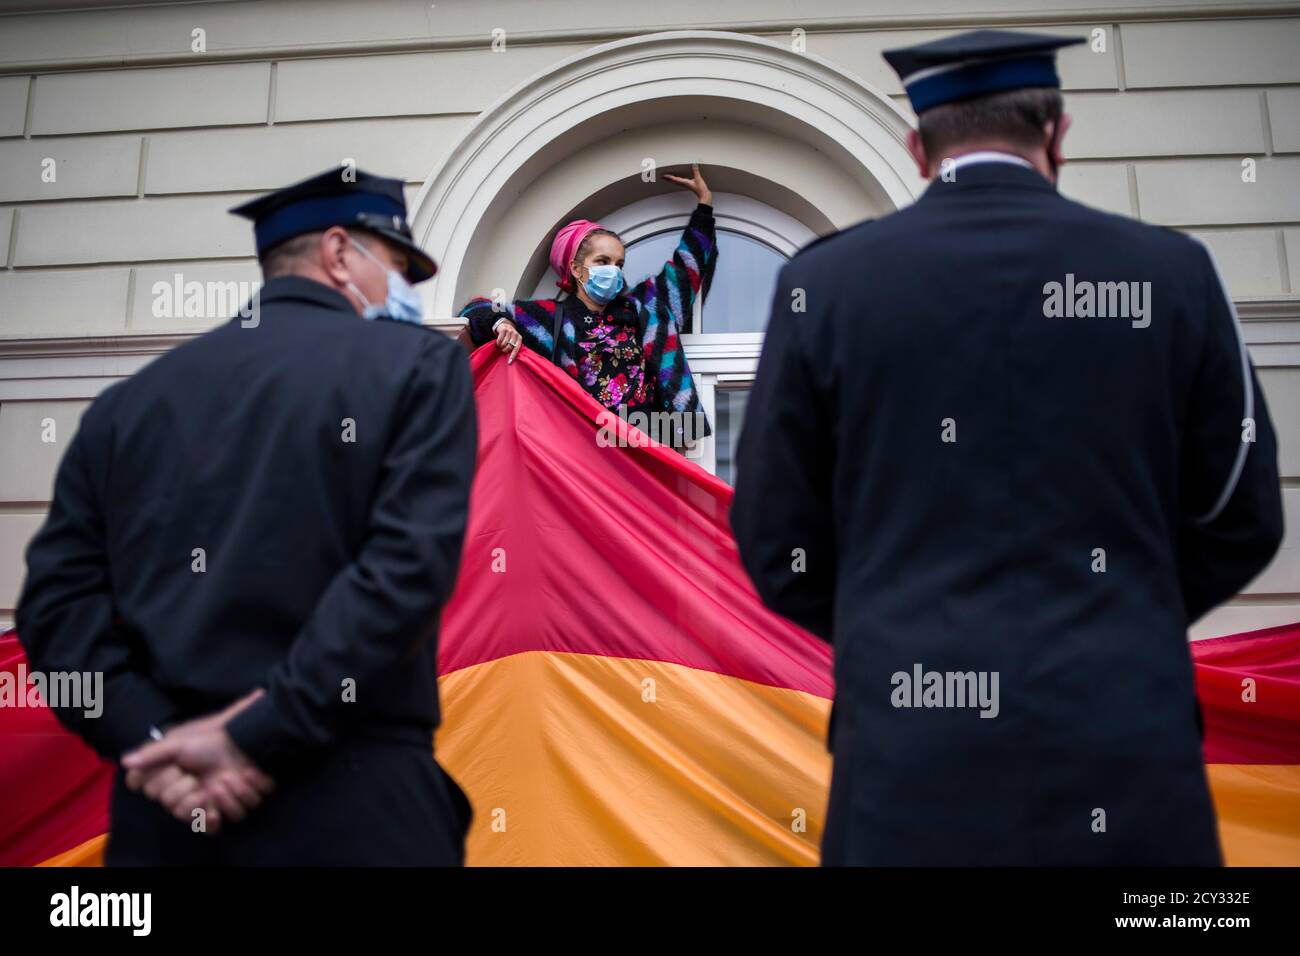 Un activiste gardé par la sécurité est vu portant un drapeau arc-en-ciel massif pendant la manifestation.à l'Université de Varsovie (UW, Uniwersytet Warszawski) les étudiants ont protesté contre la visite du Président Andrzej Duda à l'occasion de l'inauguration de l'année académique. Le comité antifasciste des étudiants (Studencki Komitet Antyfaszystowski) qui a organisé la manifestation a affirmé qu'il n'y a pas de place à l'Université de Varsovie pour Andrzej Duda, qui, pendant sa campagne électorale, a ouvertement déshumanisé le peuple LGBTQ, le décrivant comme une « idéologie ». L'événement a eu lieu à l'époque de la croissance de la haine spe Banque D'Images